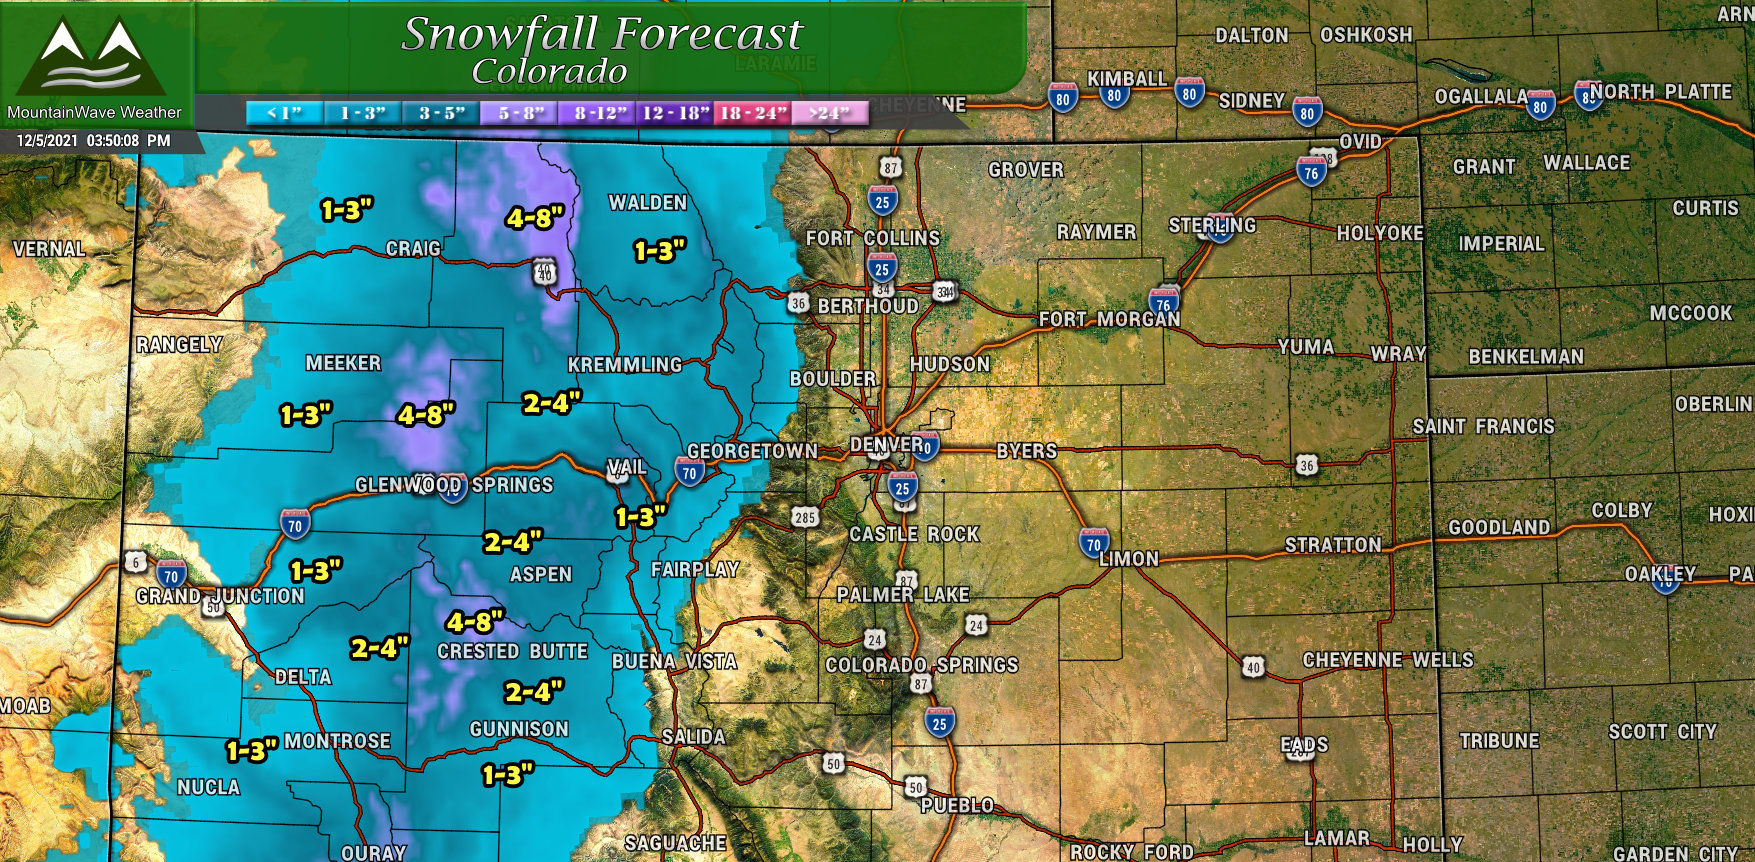 Colorado snowfall forecast through Weds 5AM 12/8/2021